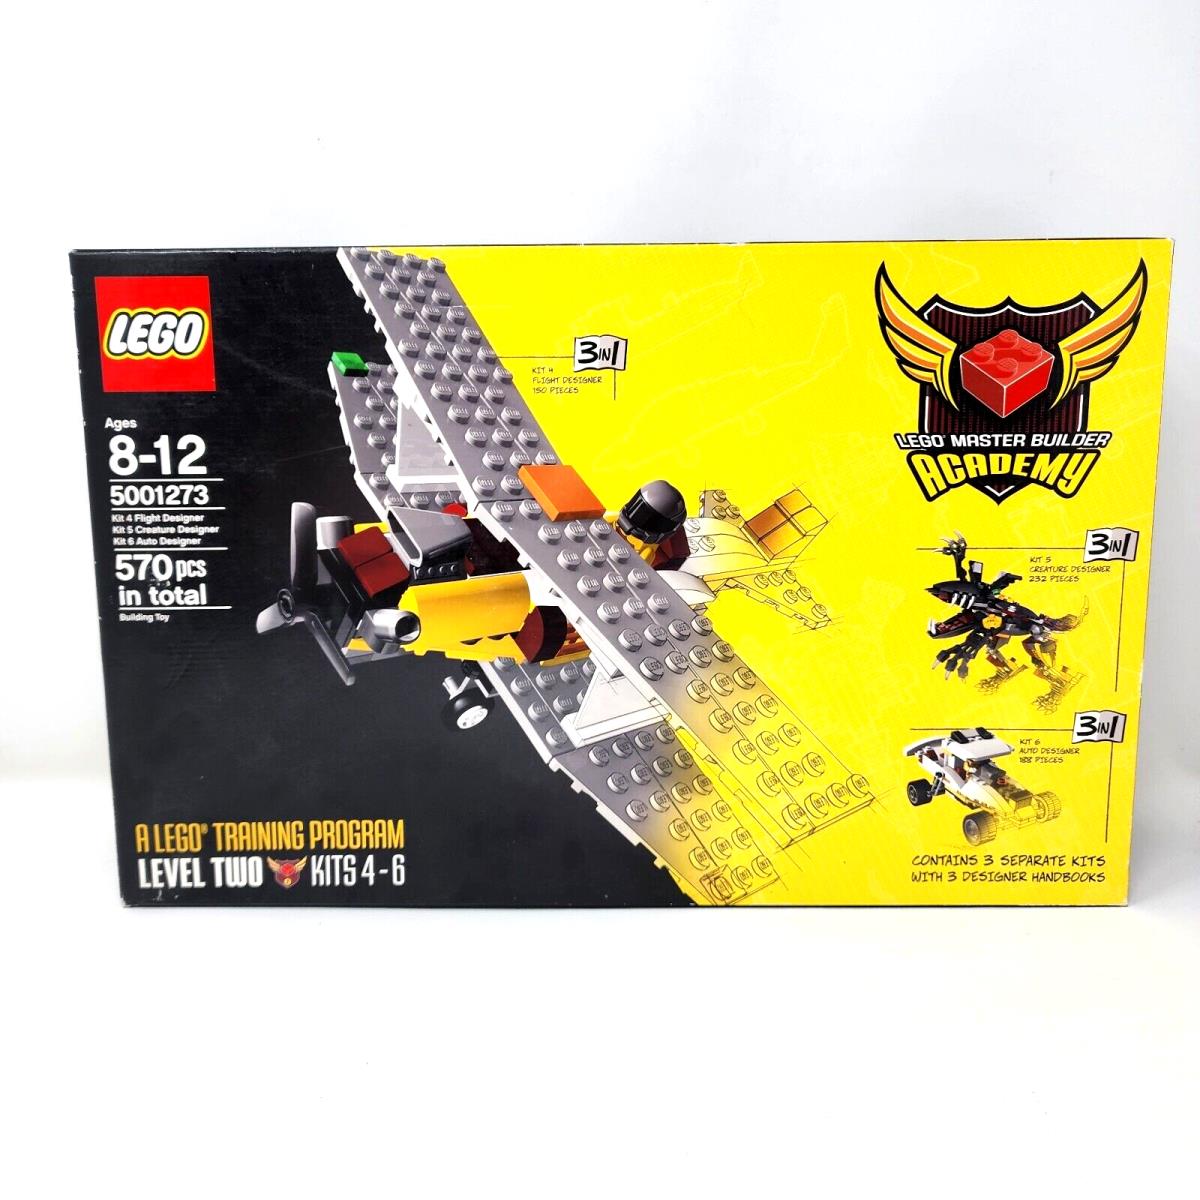 Lego 5001273 Master Builder Academy A Lego Training Program Level Two Kits 4-6